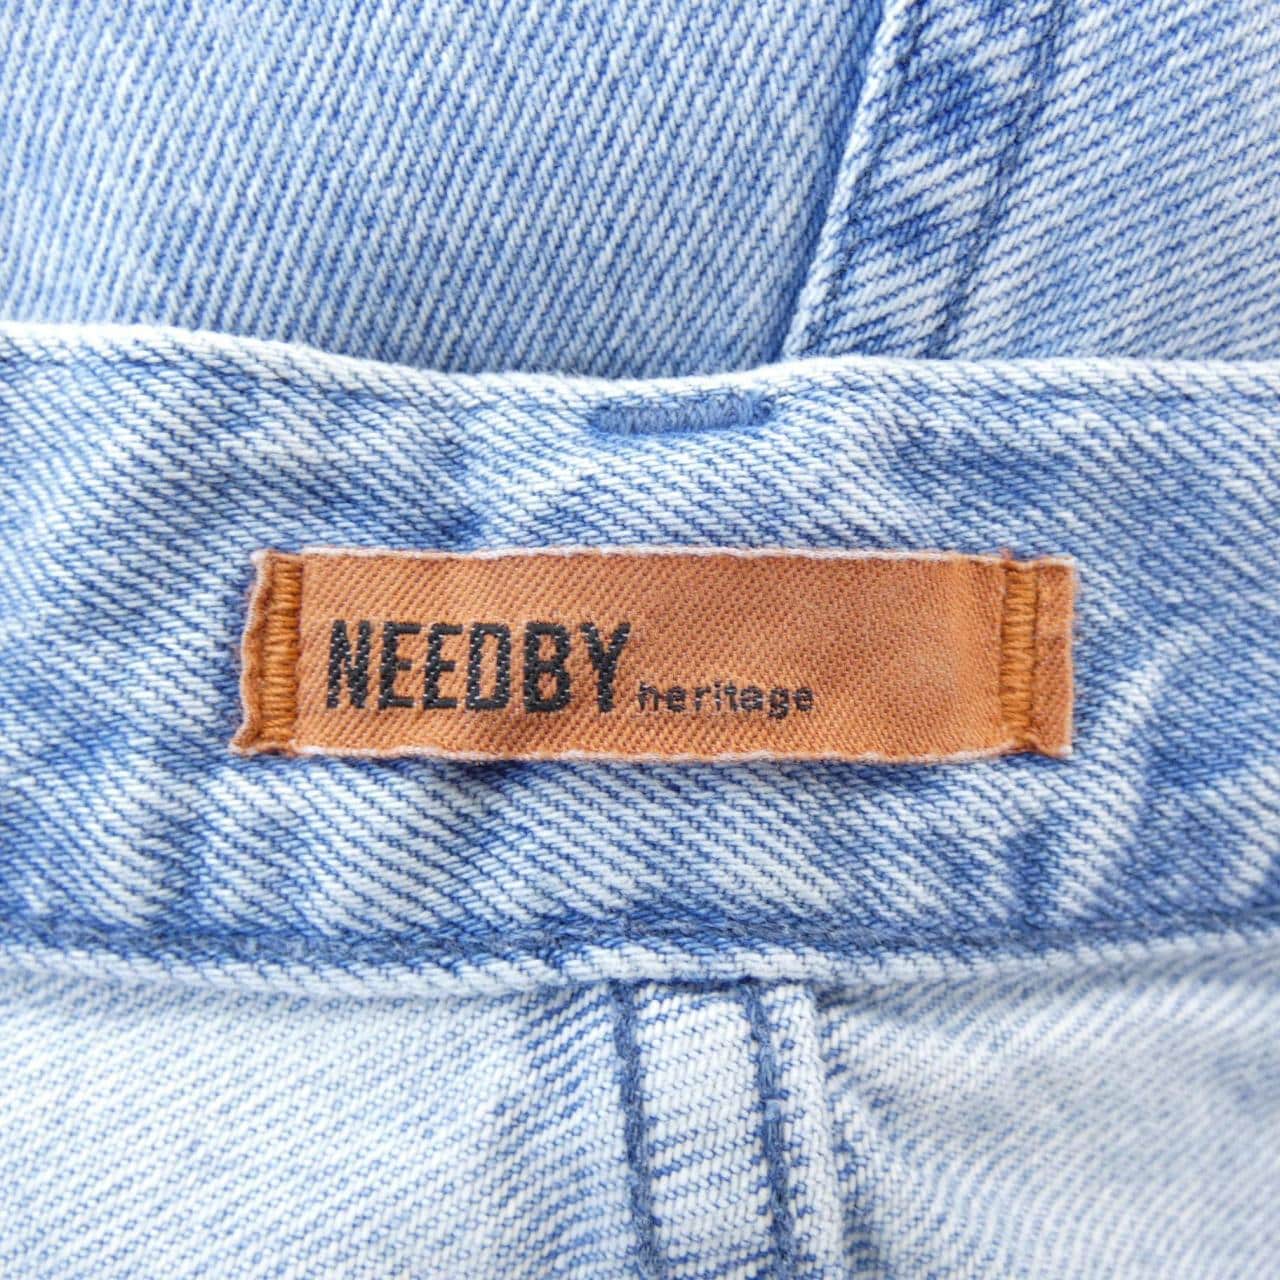 NEEDBY HERITAGE牛仔裤